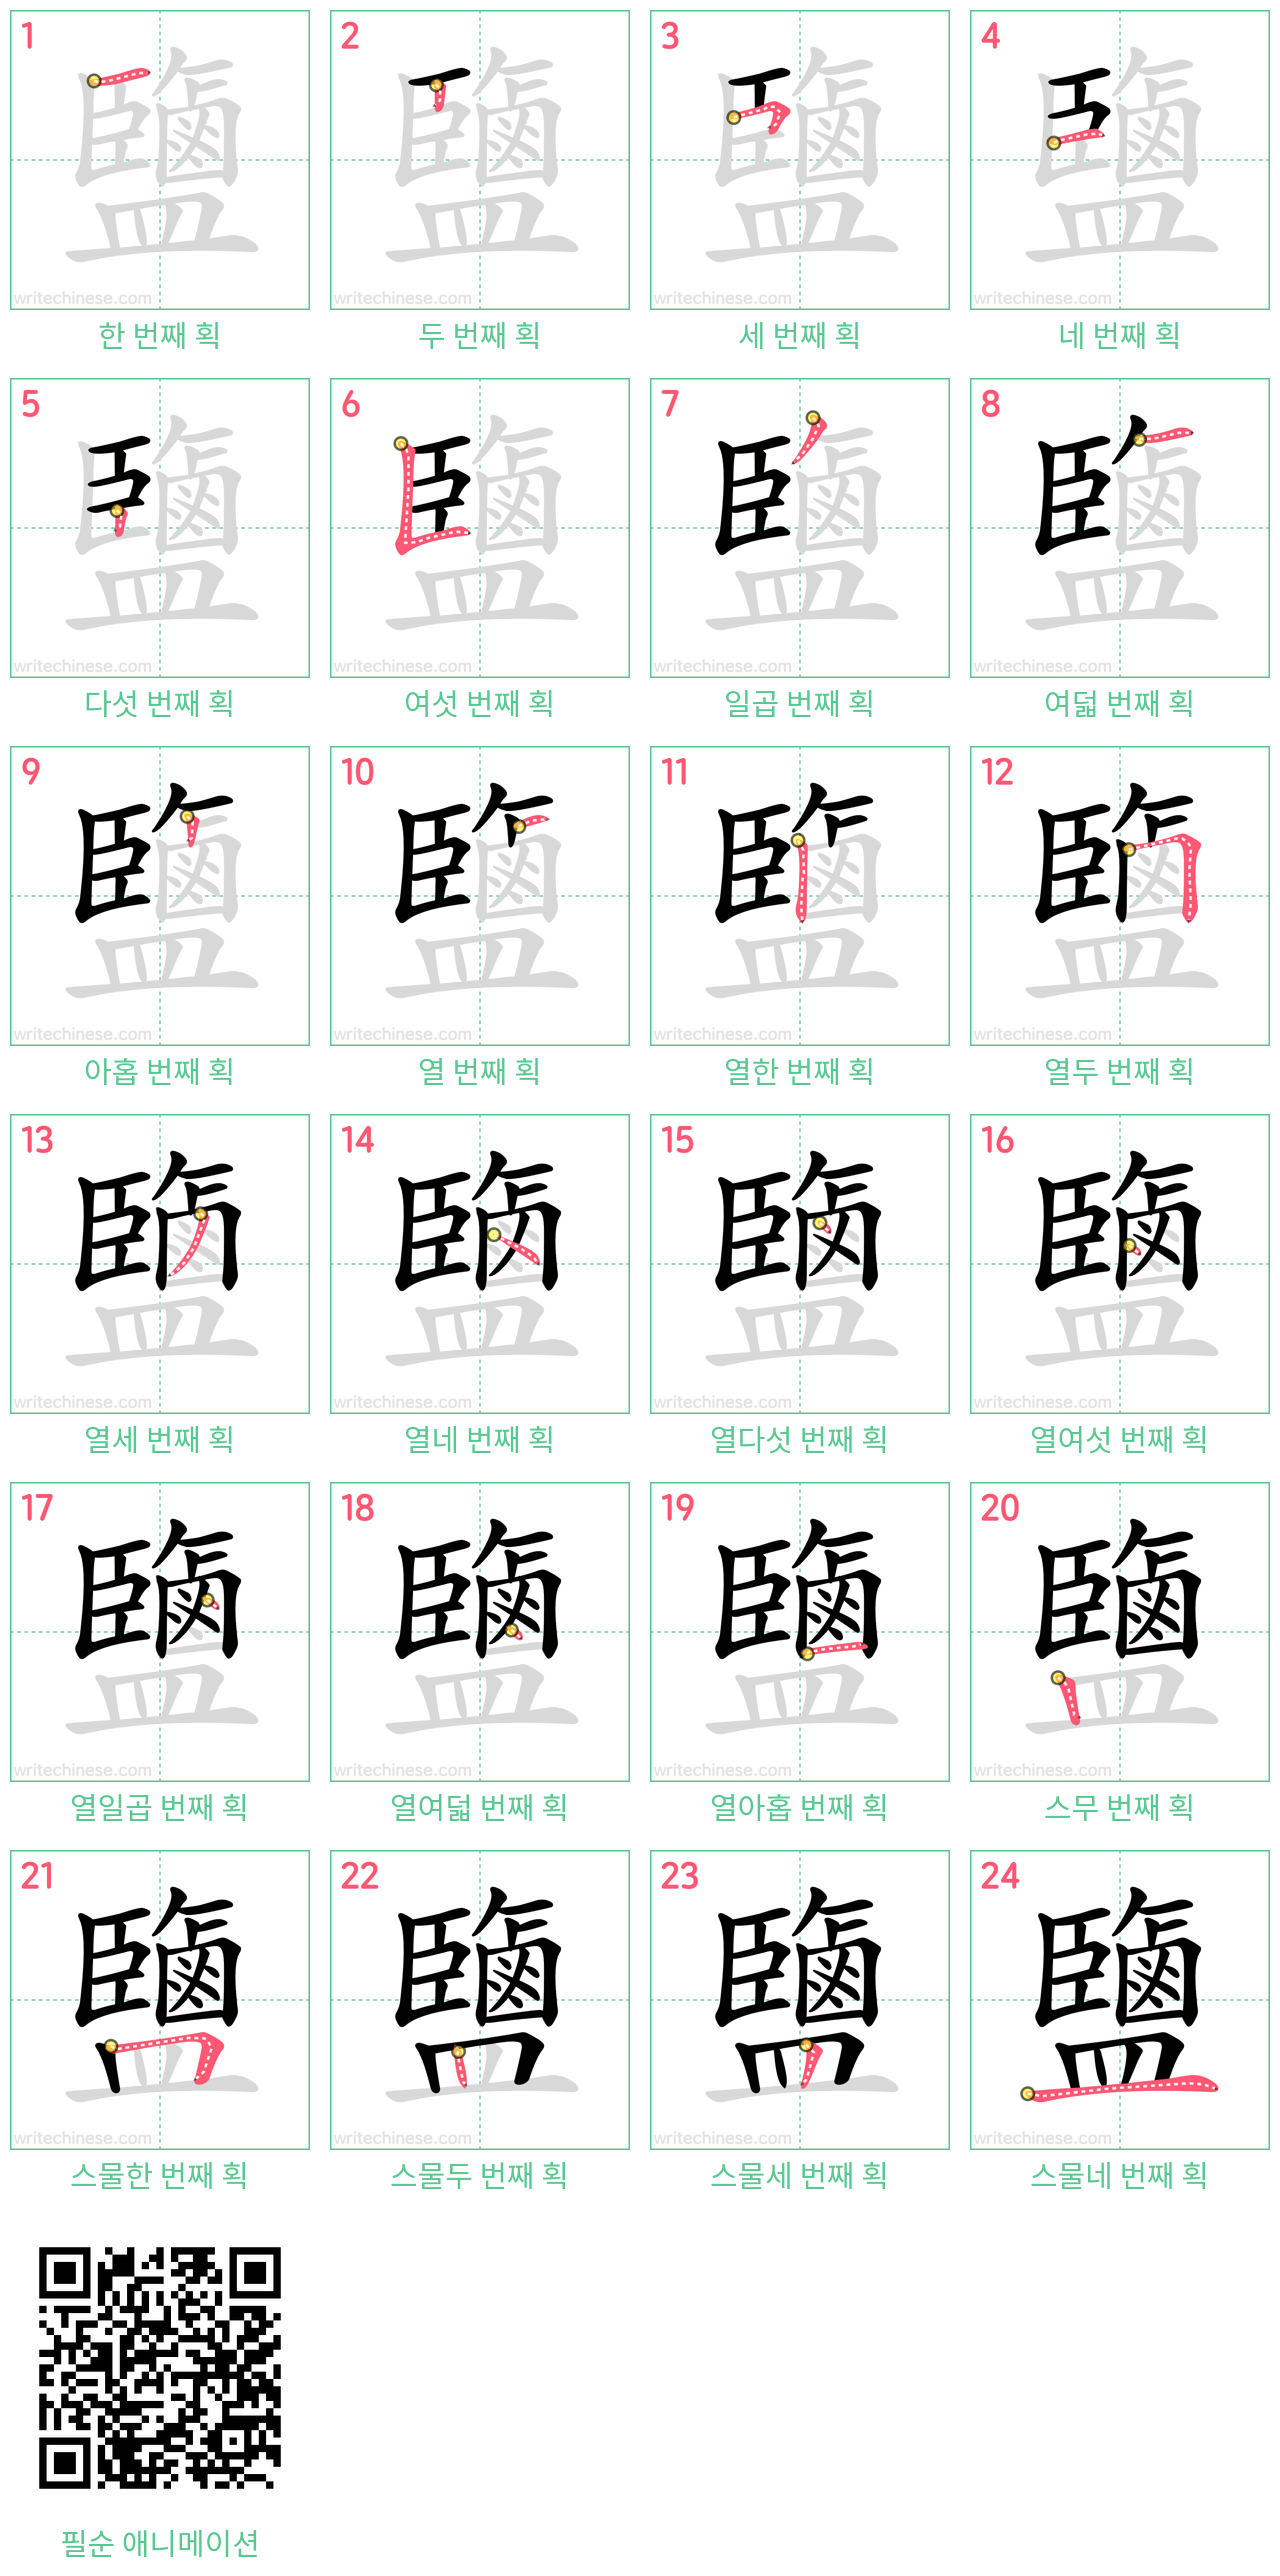 鹽 step-by-step stroke order diagrams